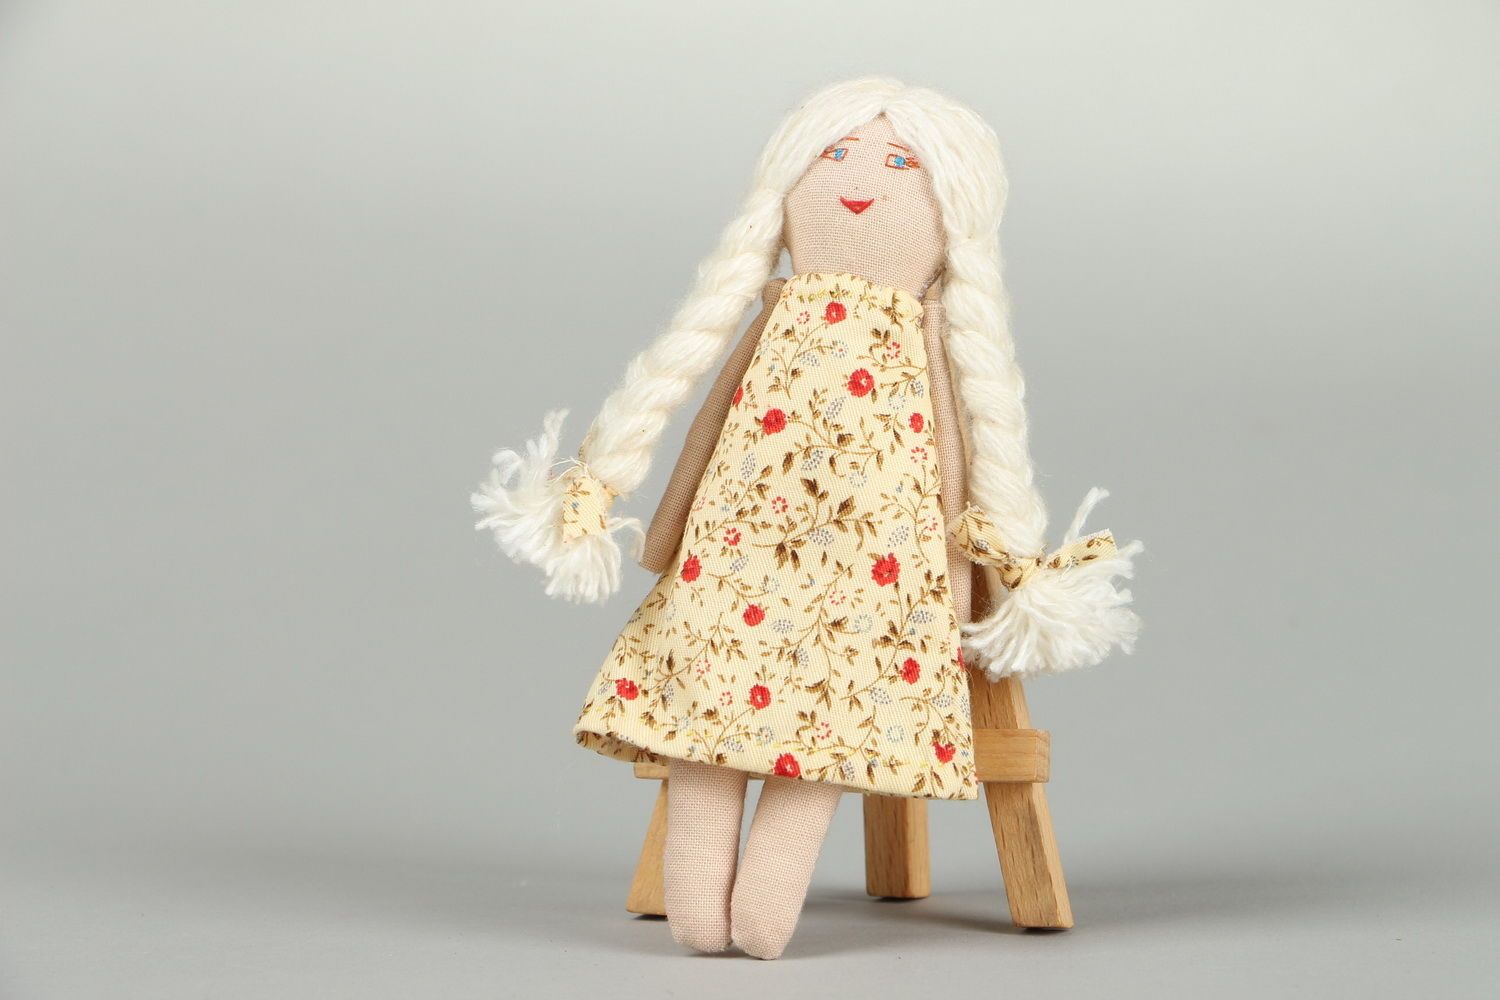 Primitive doll in dress photo 2